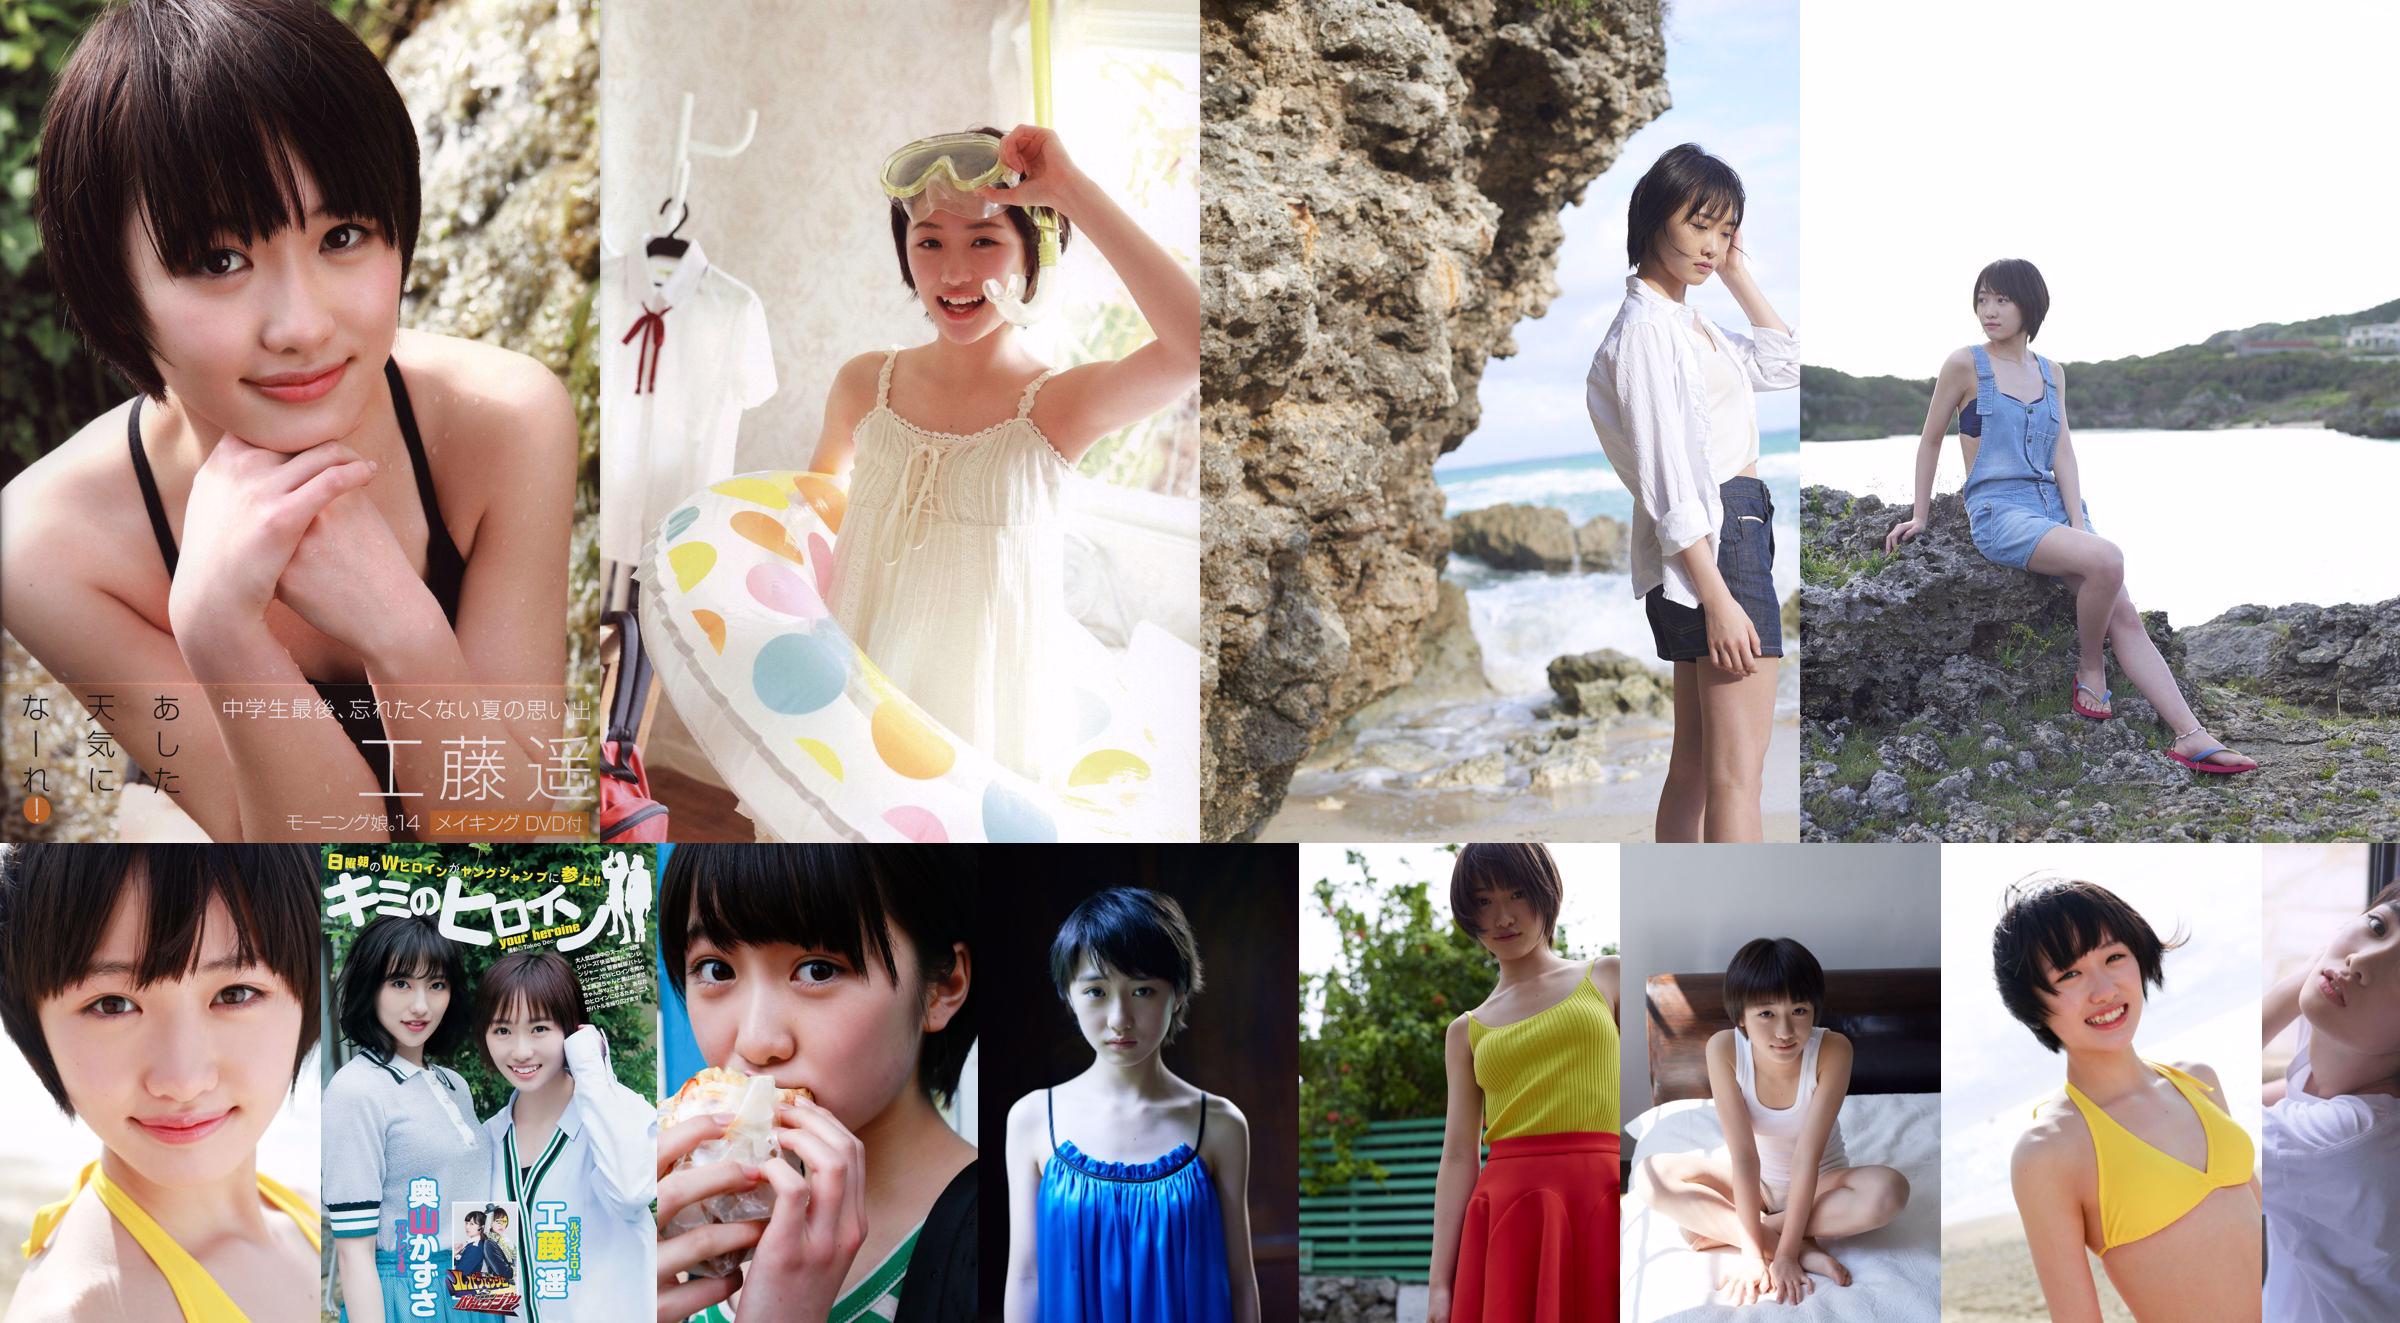 [DGC] NO.560 Masami Tachiki Tachiki Shengmei Uniform Beautiful Girl Paradise No.5c4c1e Страница 3